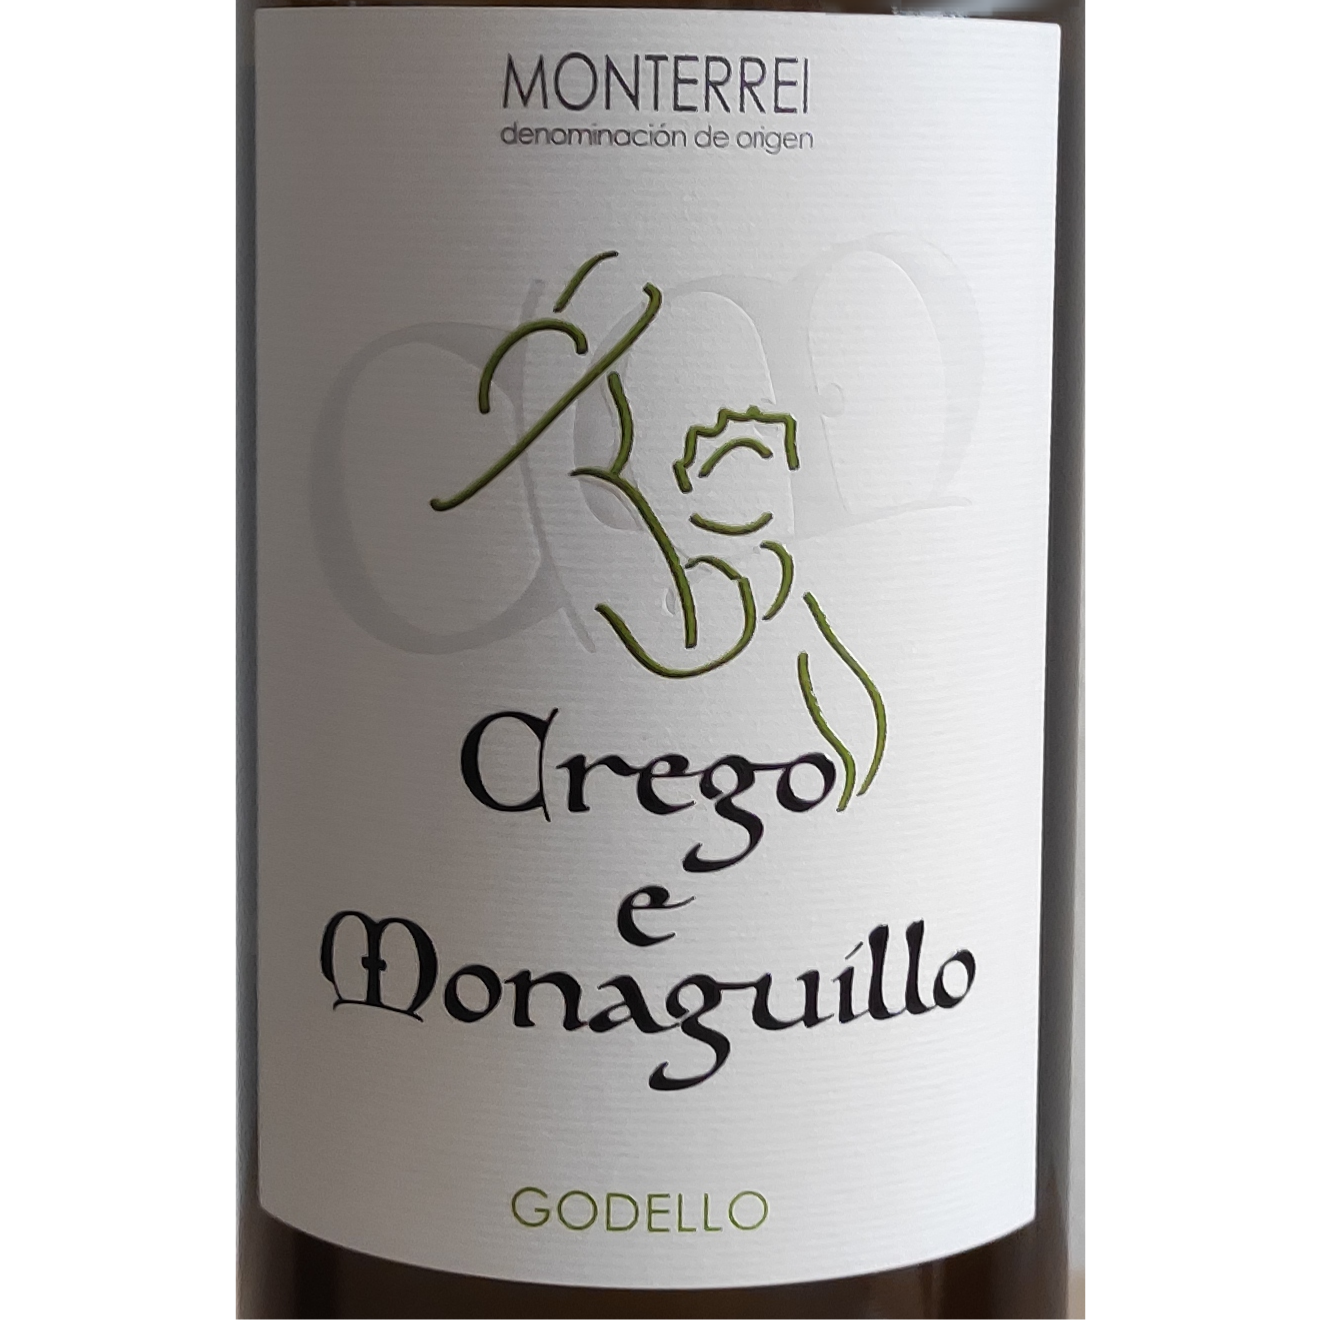 Wine Crego e Monaguillo blanco - Wines Smartbites